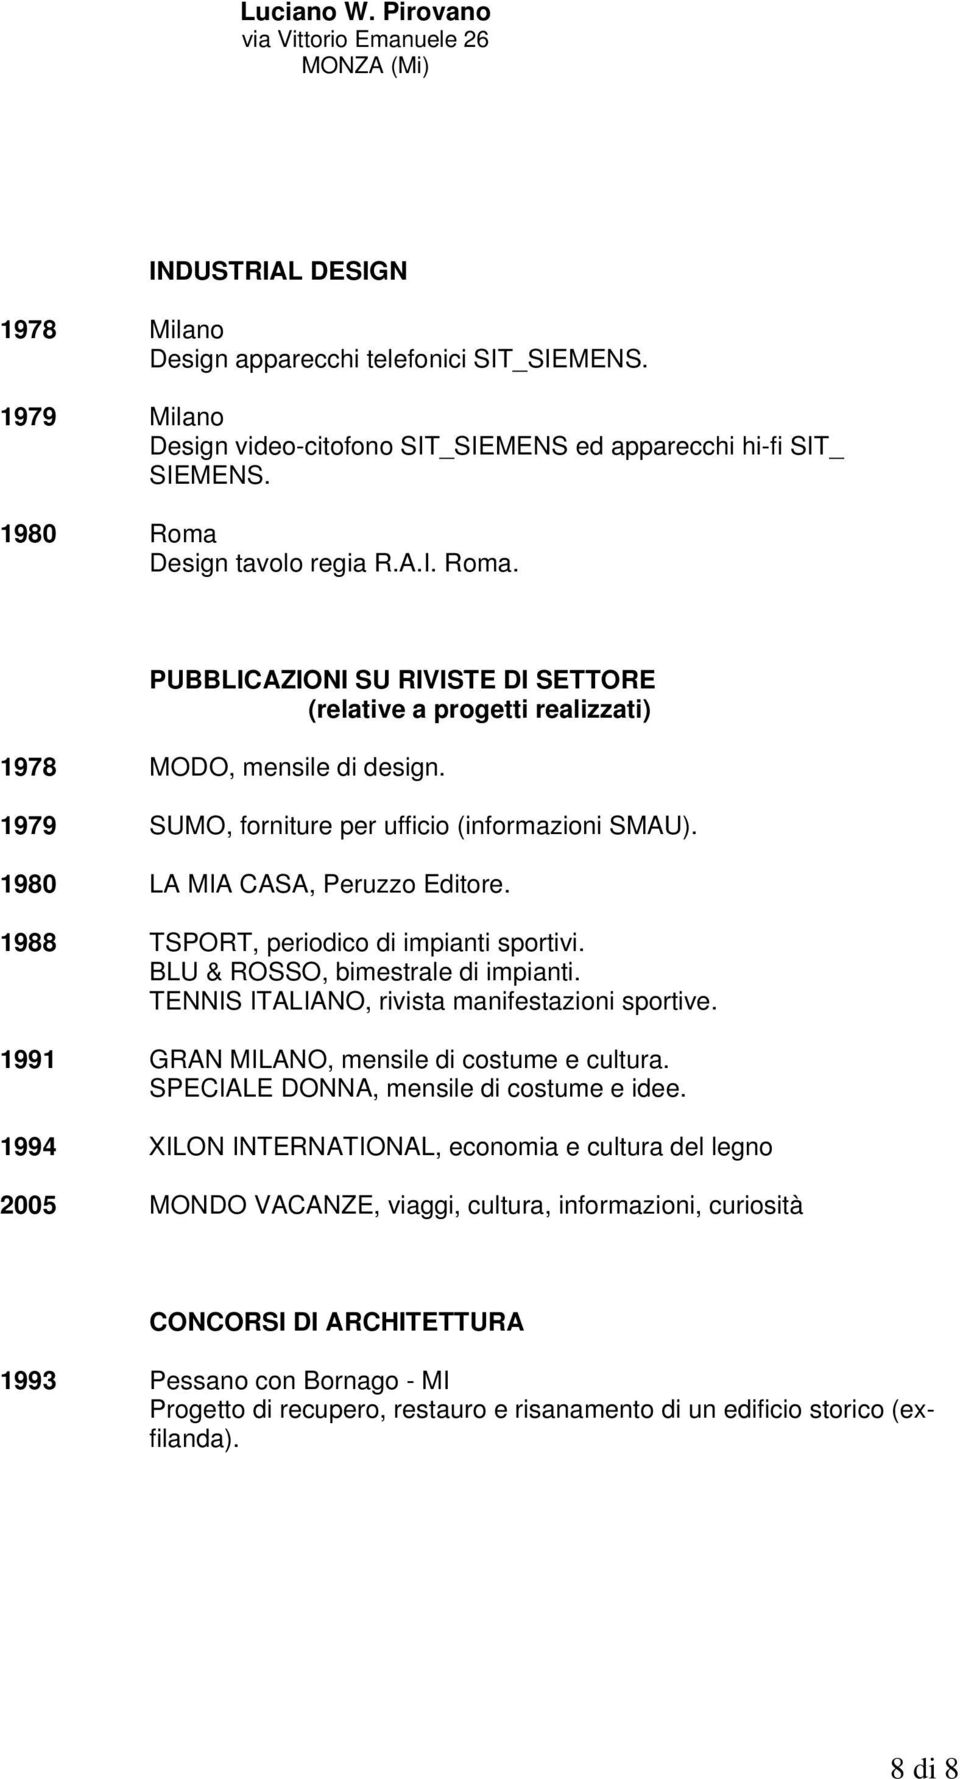 1980 LA MIA CASA, Peruzzo Editore. 1988 TSPORT, periodico di impianti sportivi. BLU & ROSSO, bimestrale di impianti. TENNIS ITALIANO, rivista manifestazioni sportive.